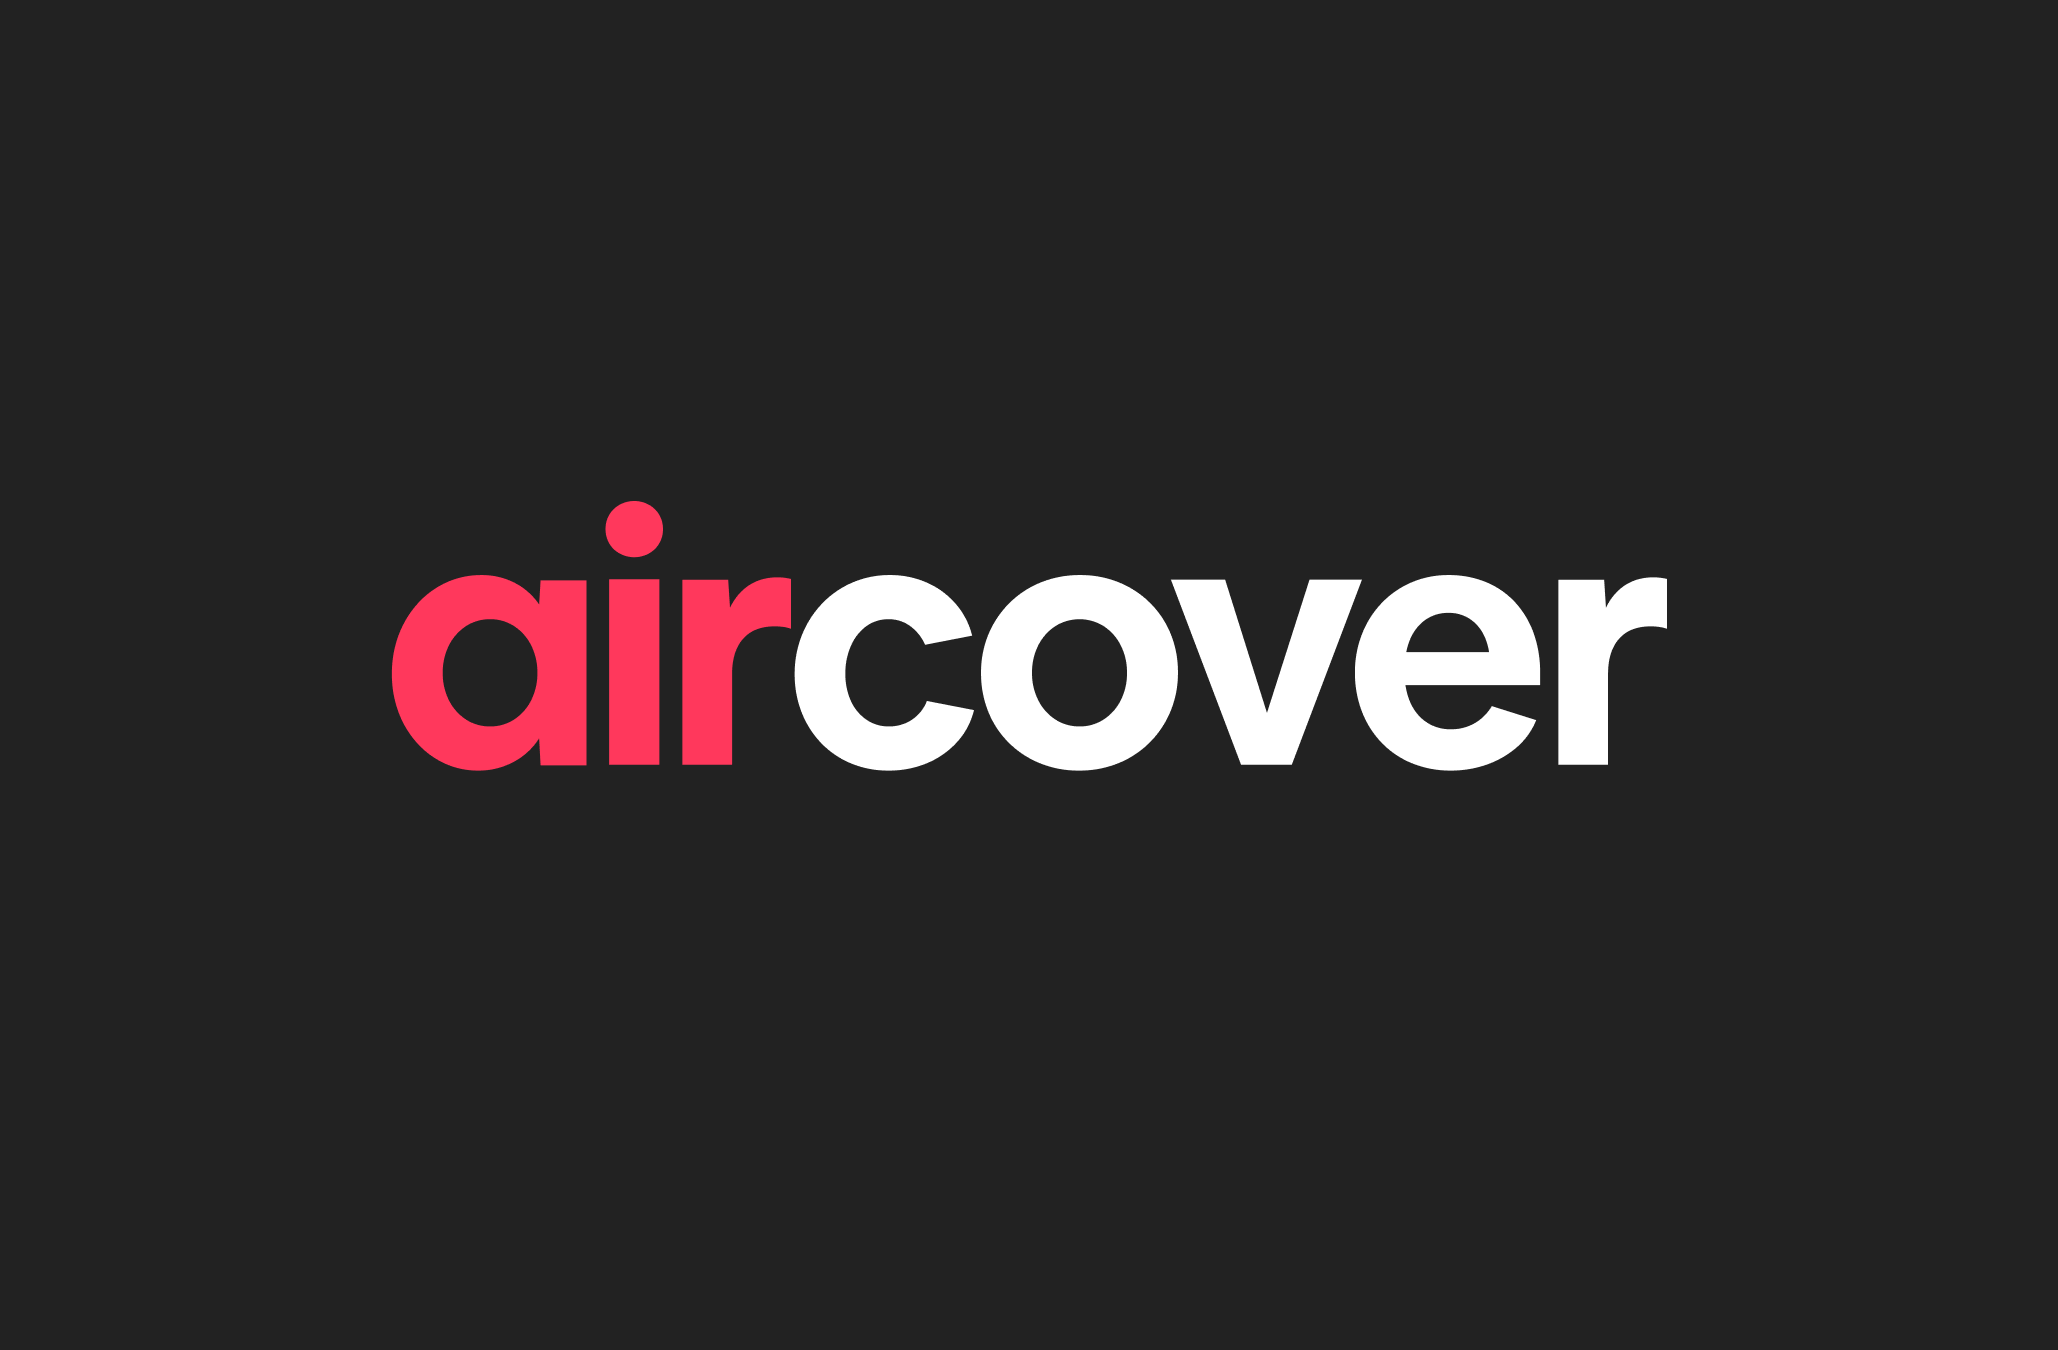 Изображение логотипа AirCover красными и белыми буквами на черном фоне.